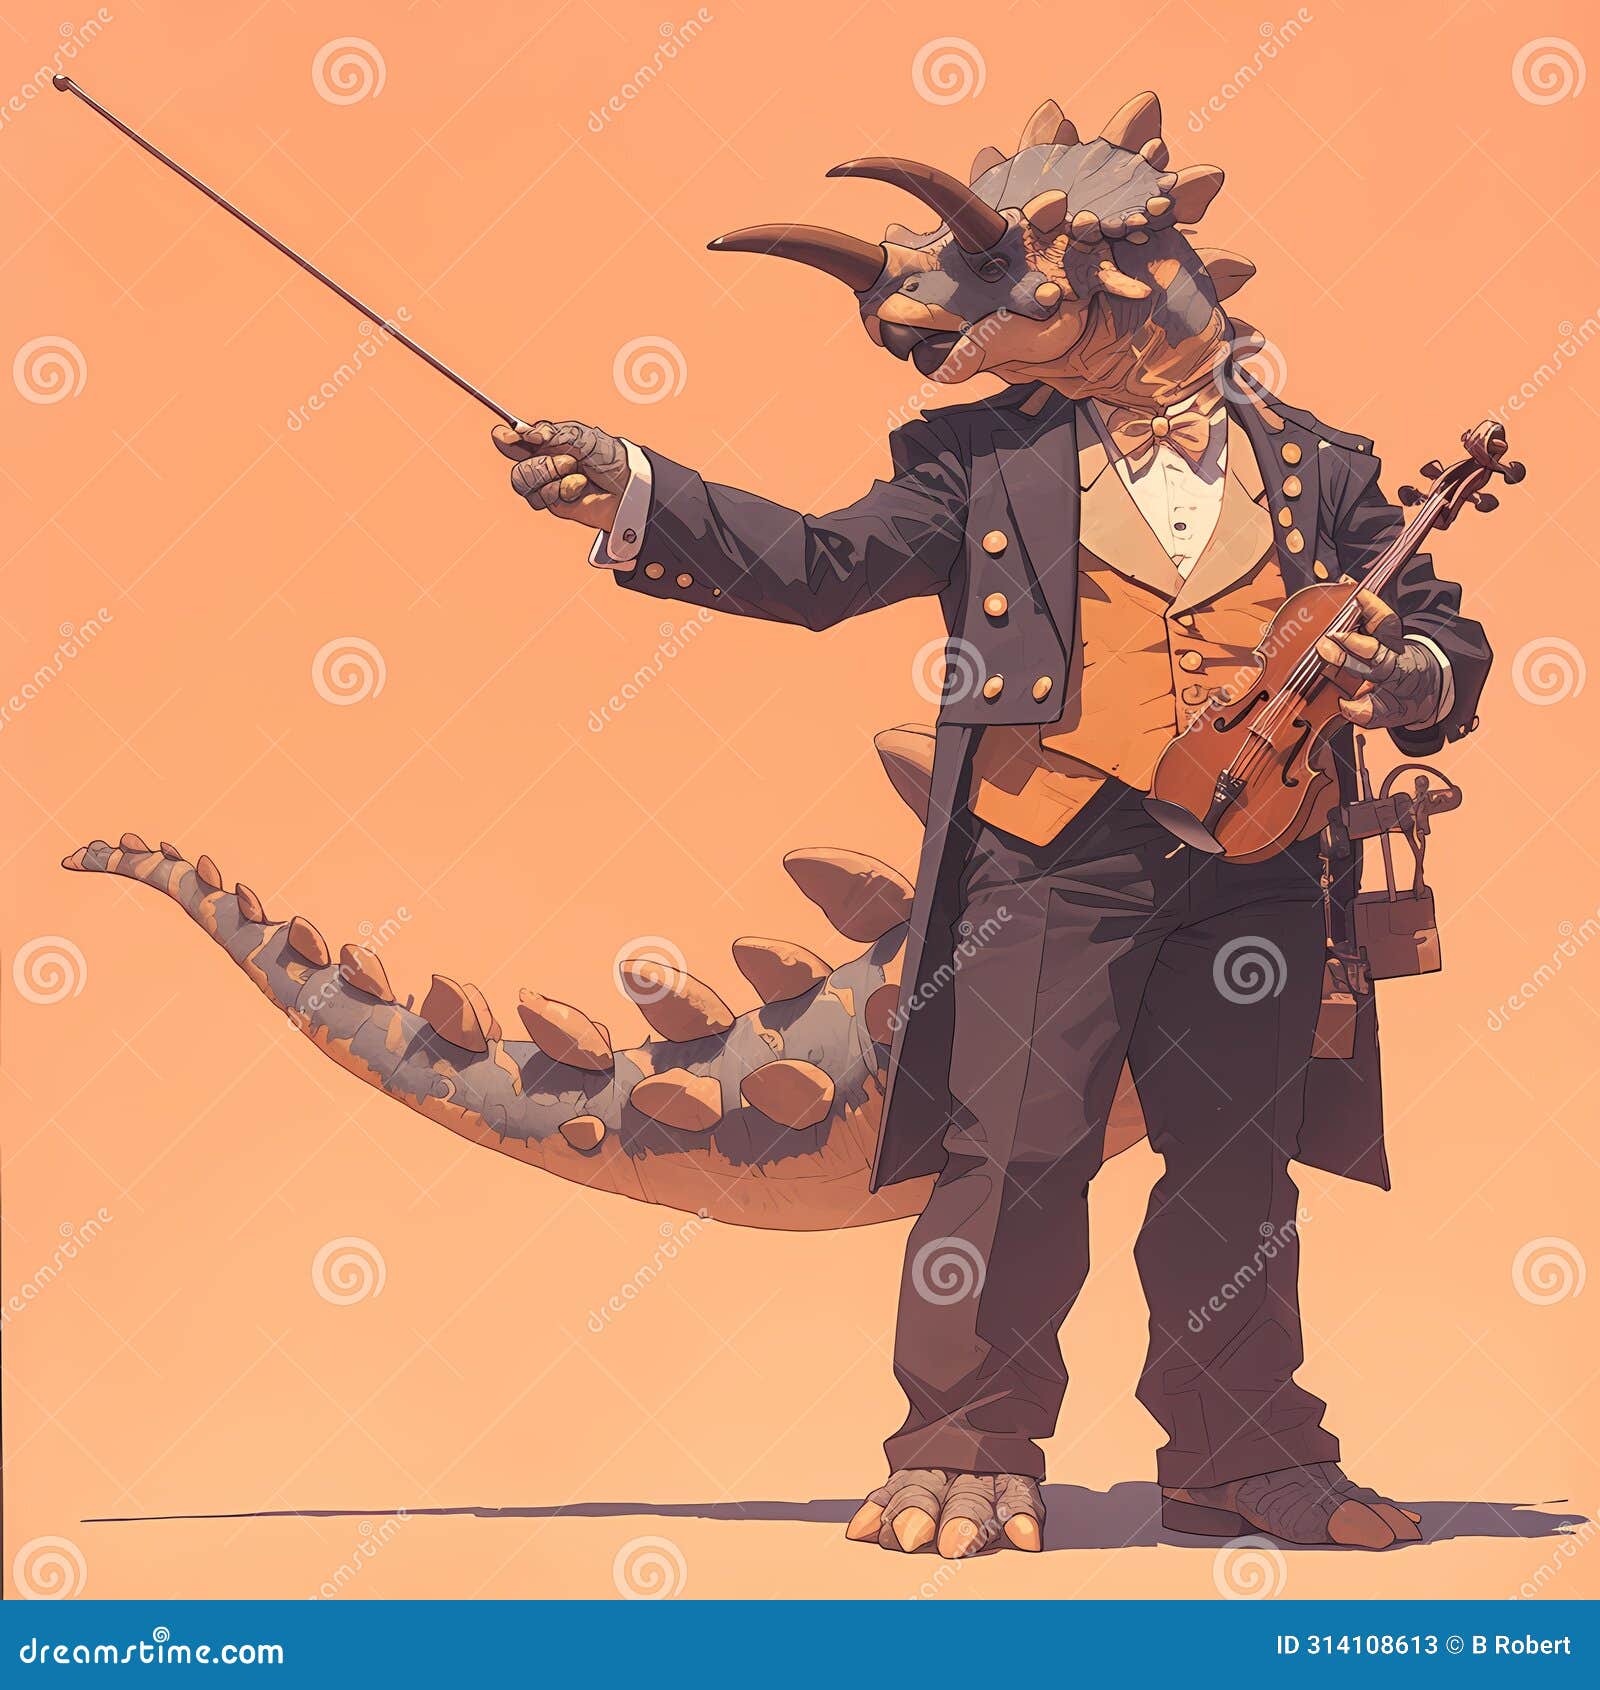 ankylosaurus conductor: elegant dinosaur maestro